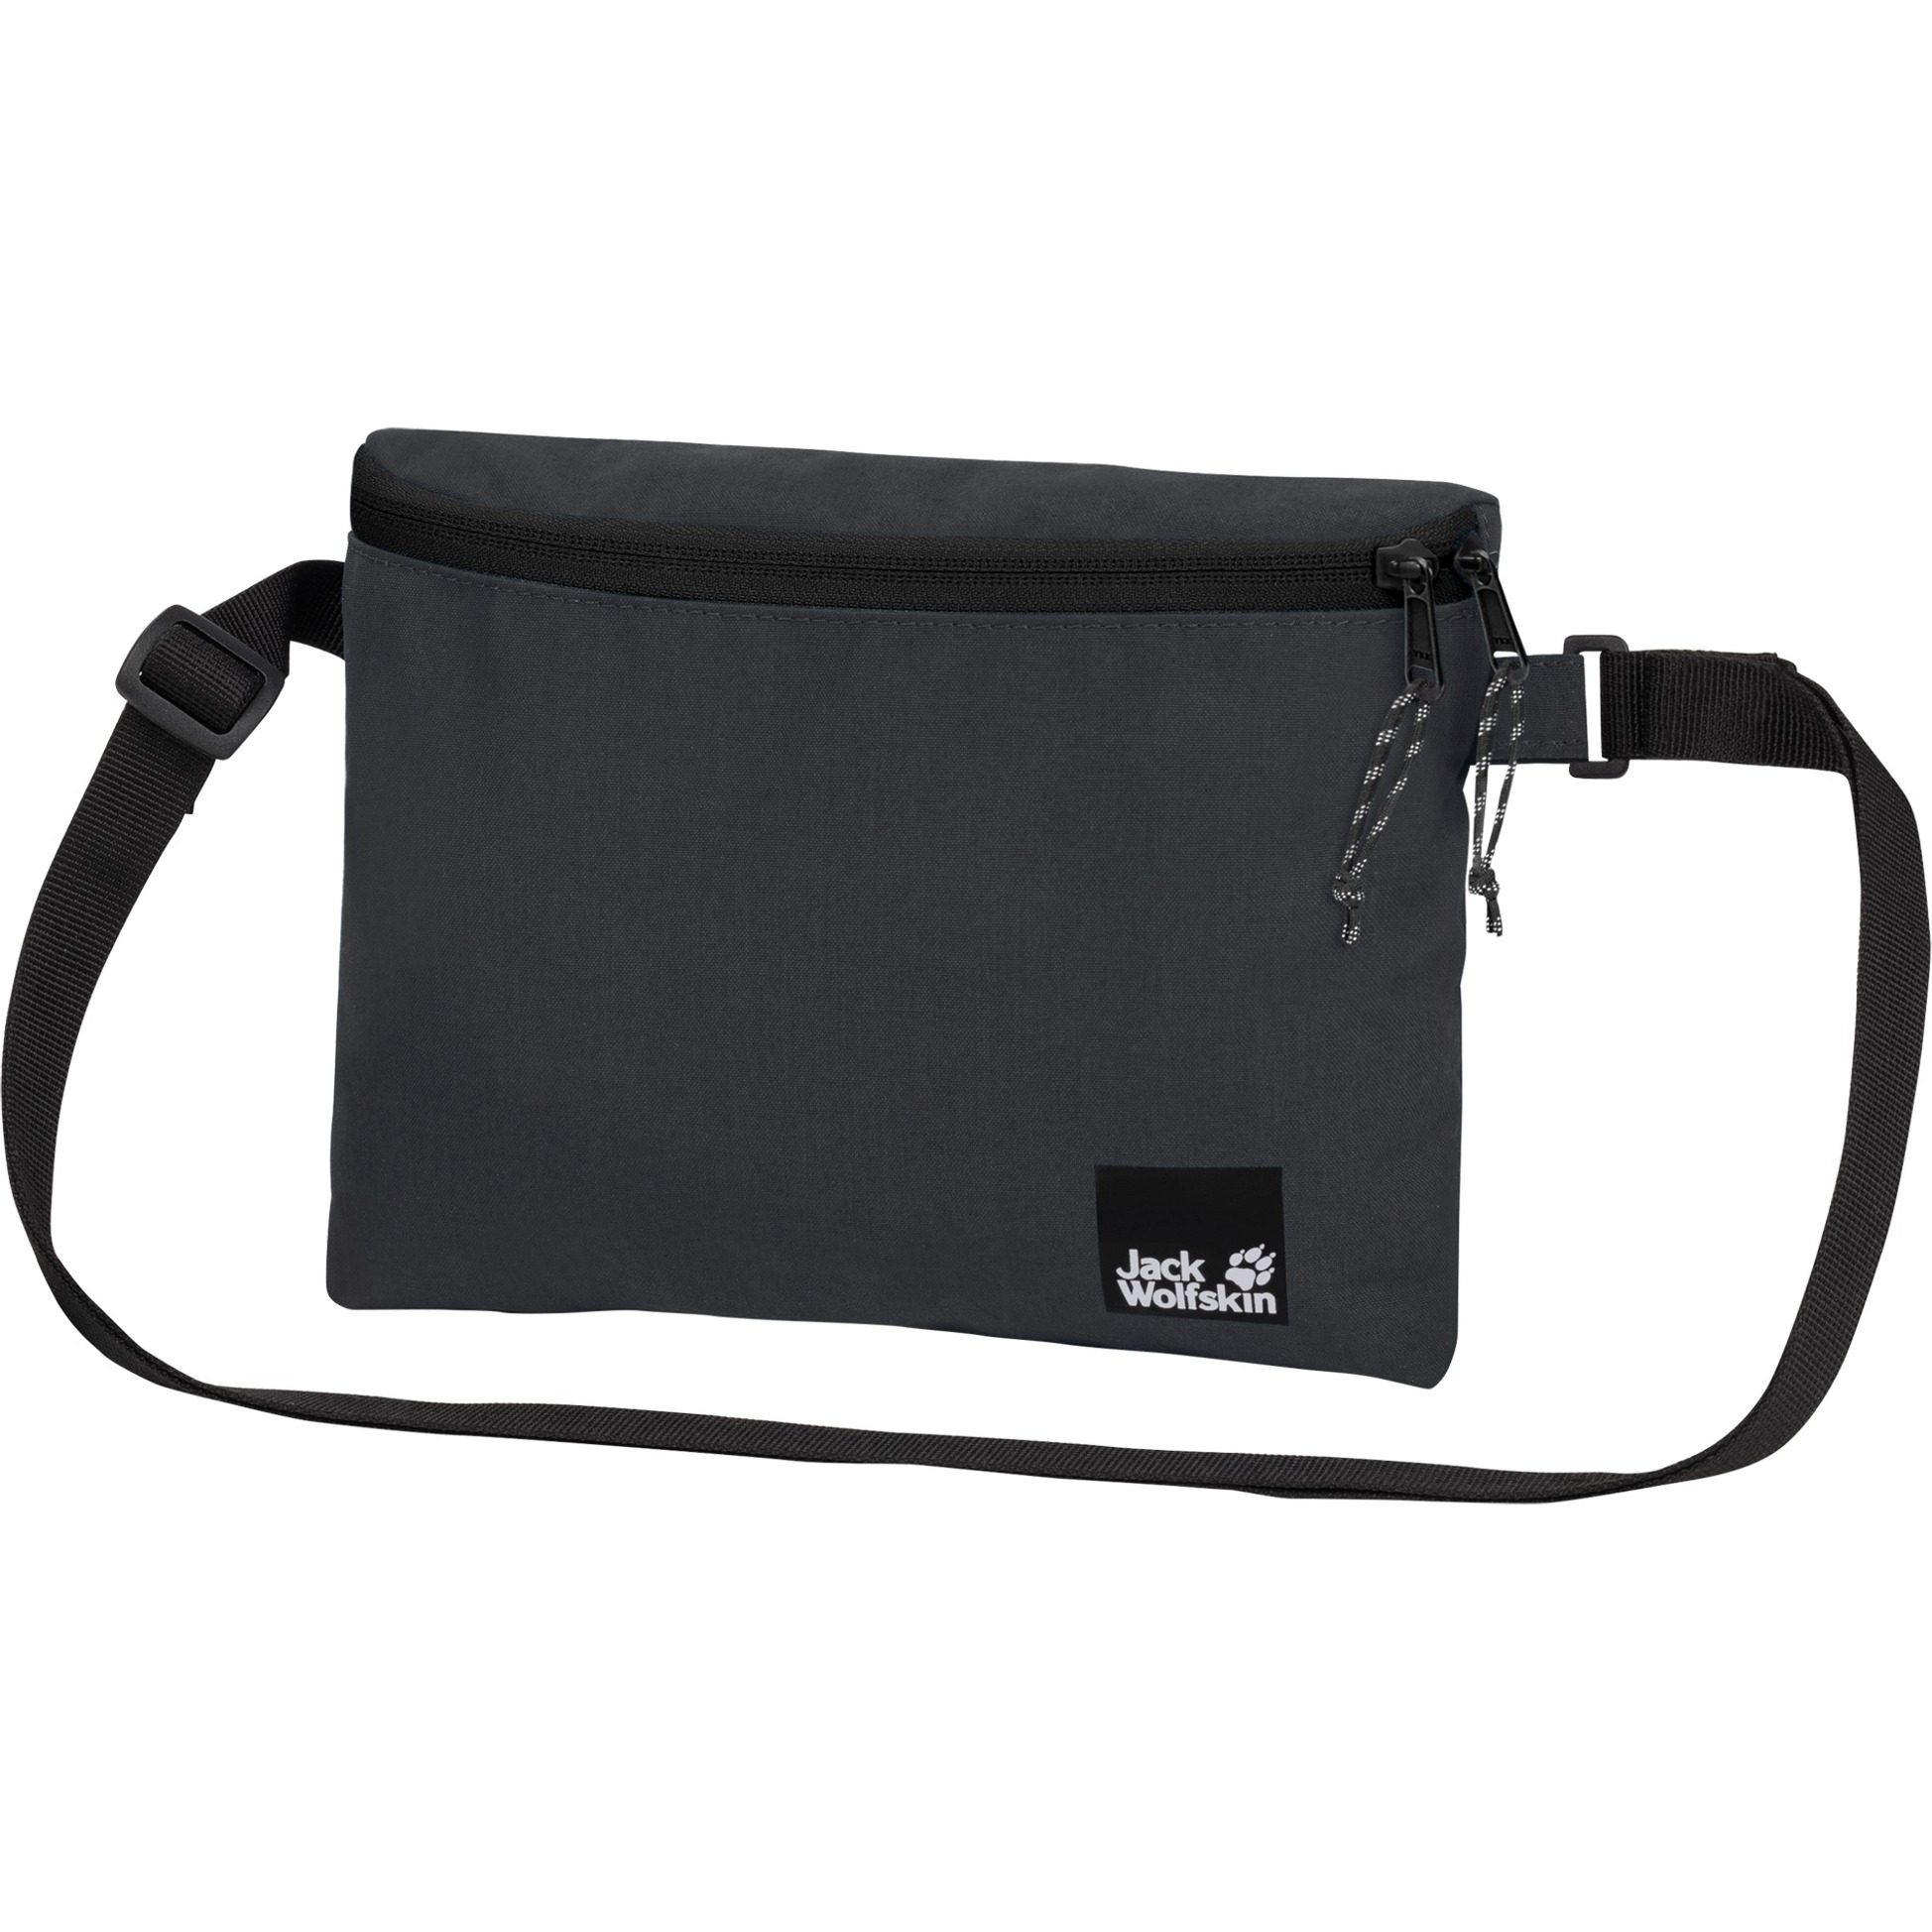 Image of Alternate - 365 BAG, Tasche online einkaufen bei Alternate